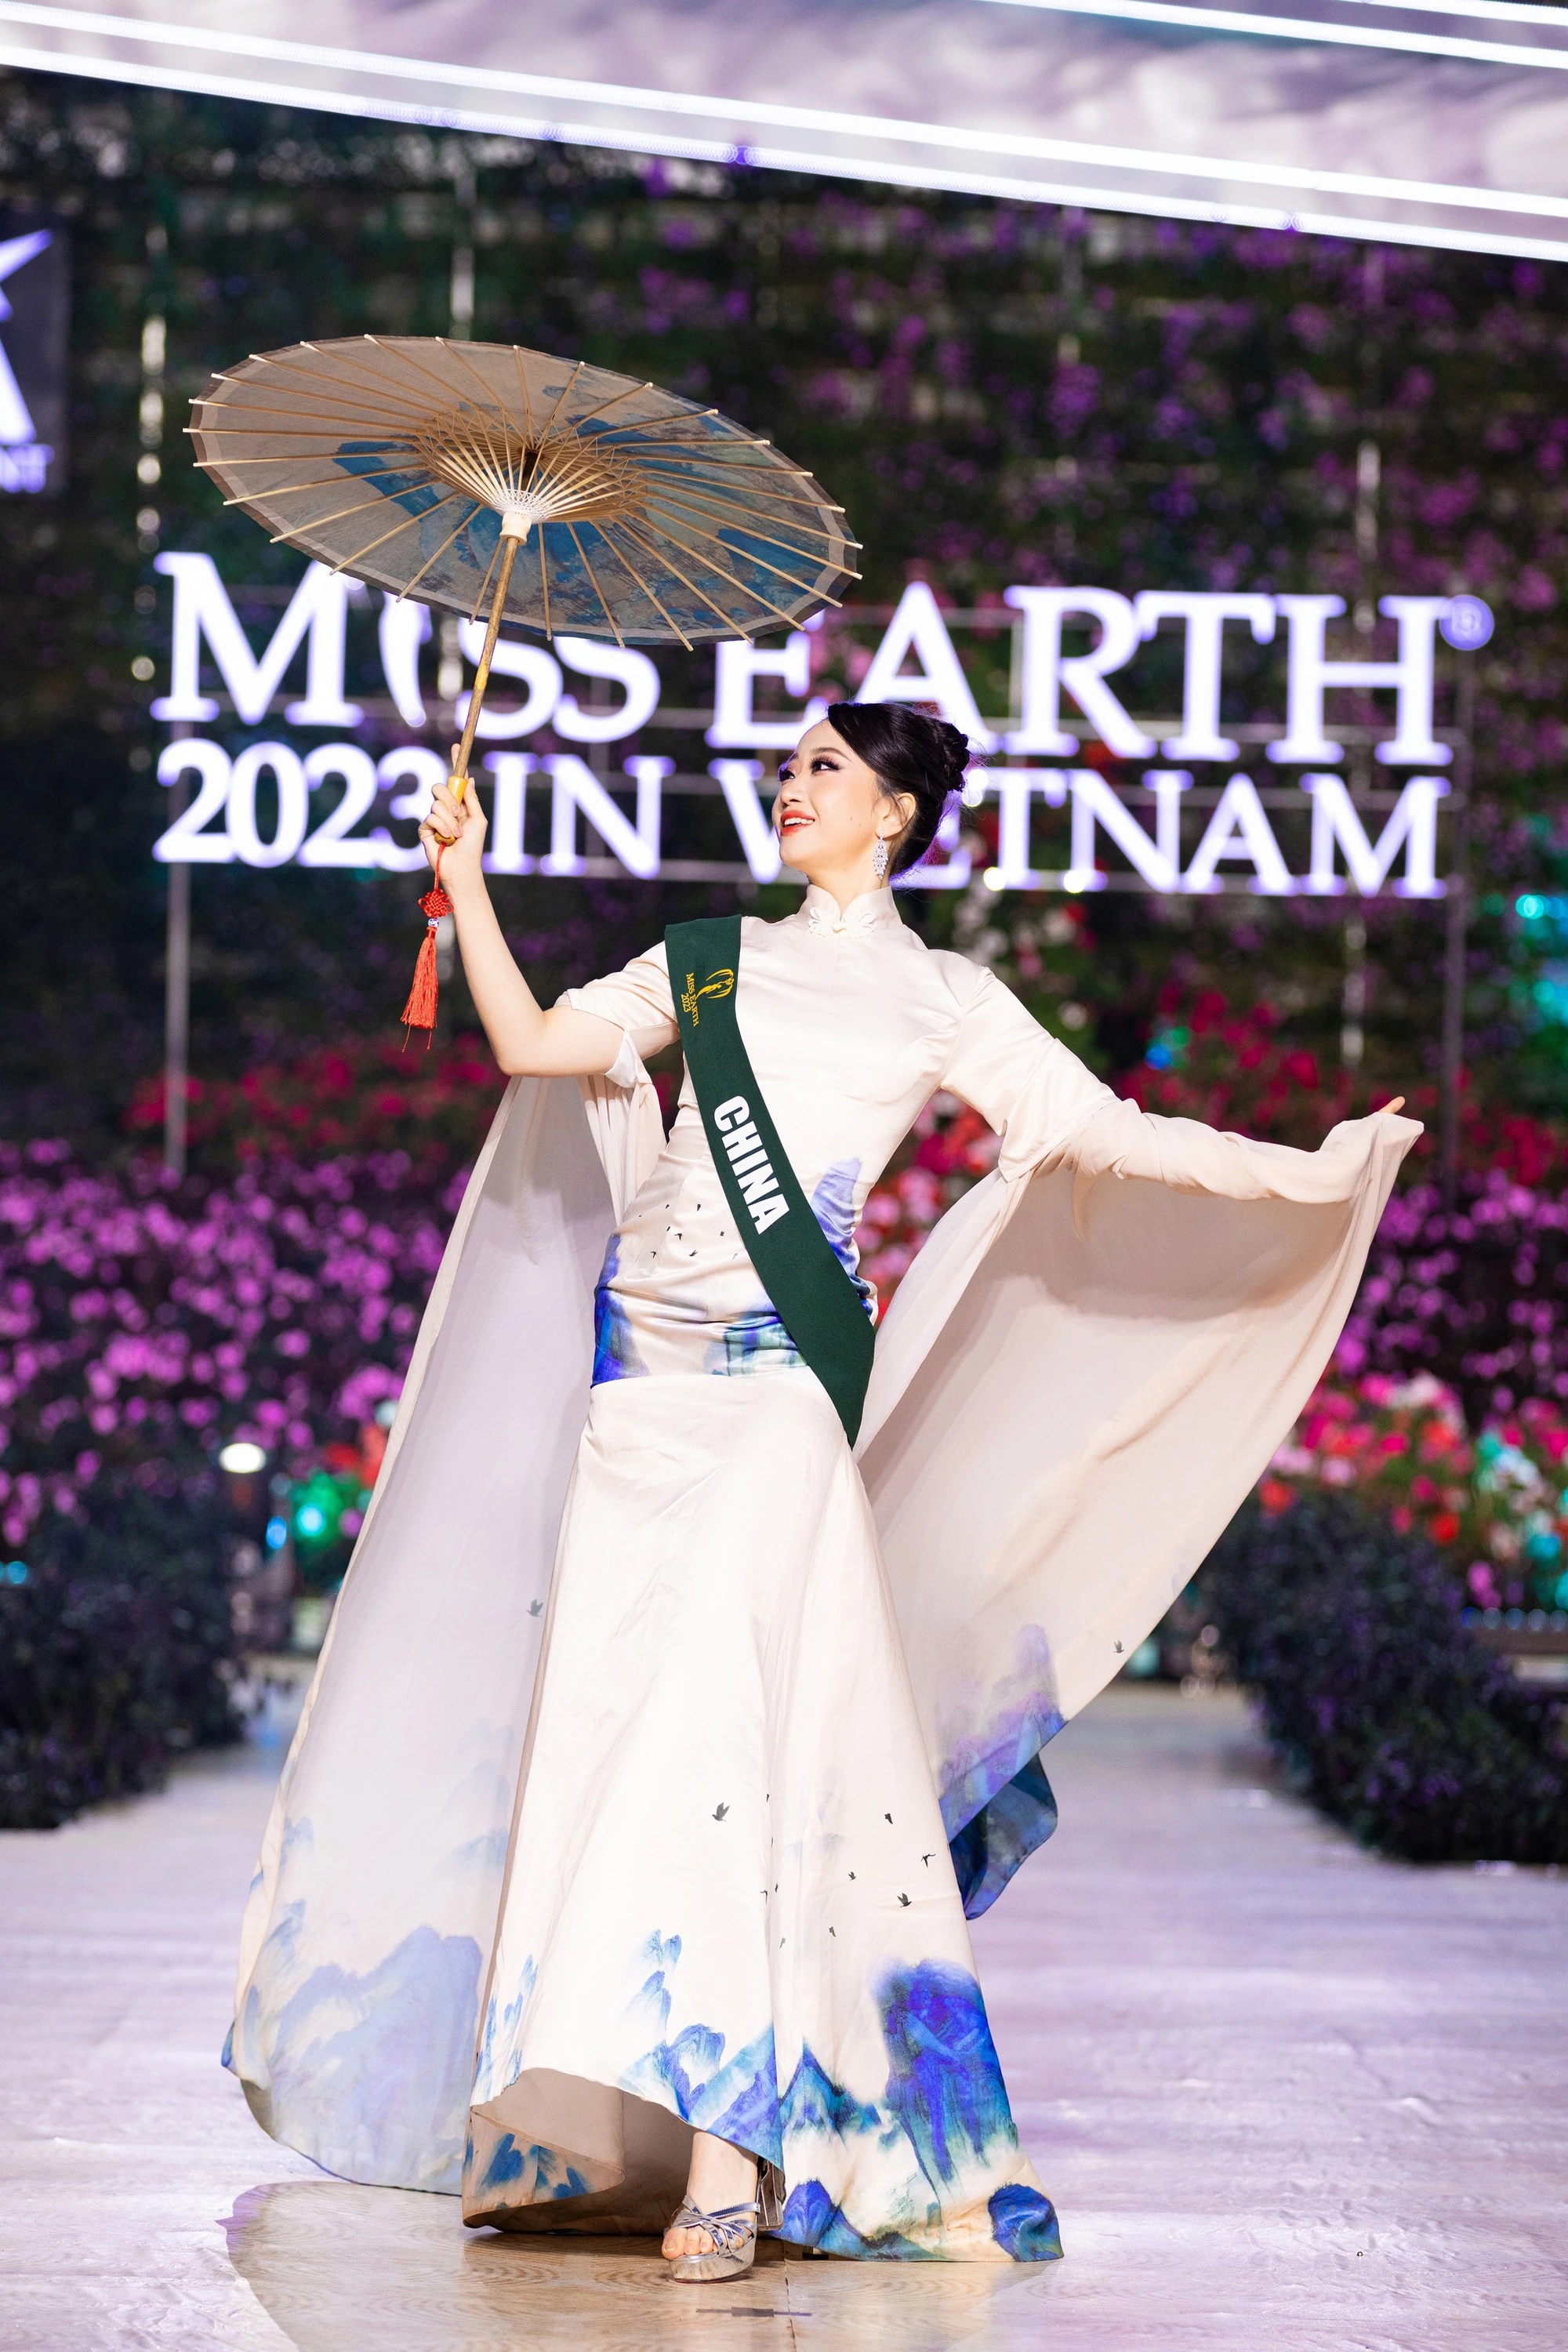 Bán kết Miss Earth 2023 màn trình Trang phục Dân tộc bùng nổ hình ảnh cỏ hoa, muông thú - Ảnh 35.